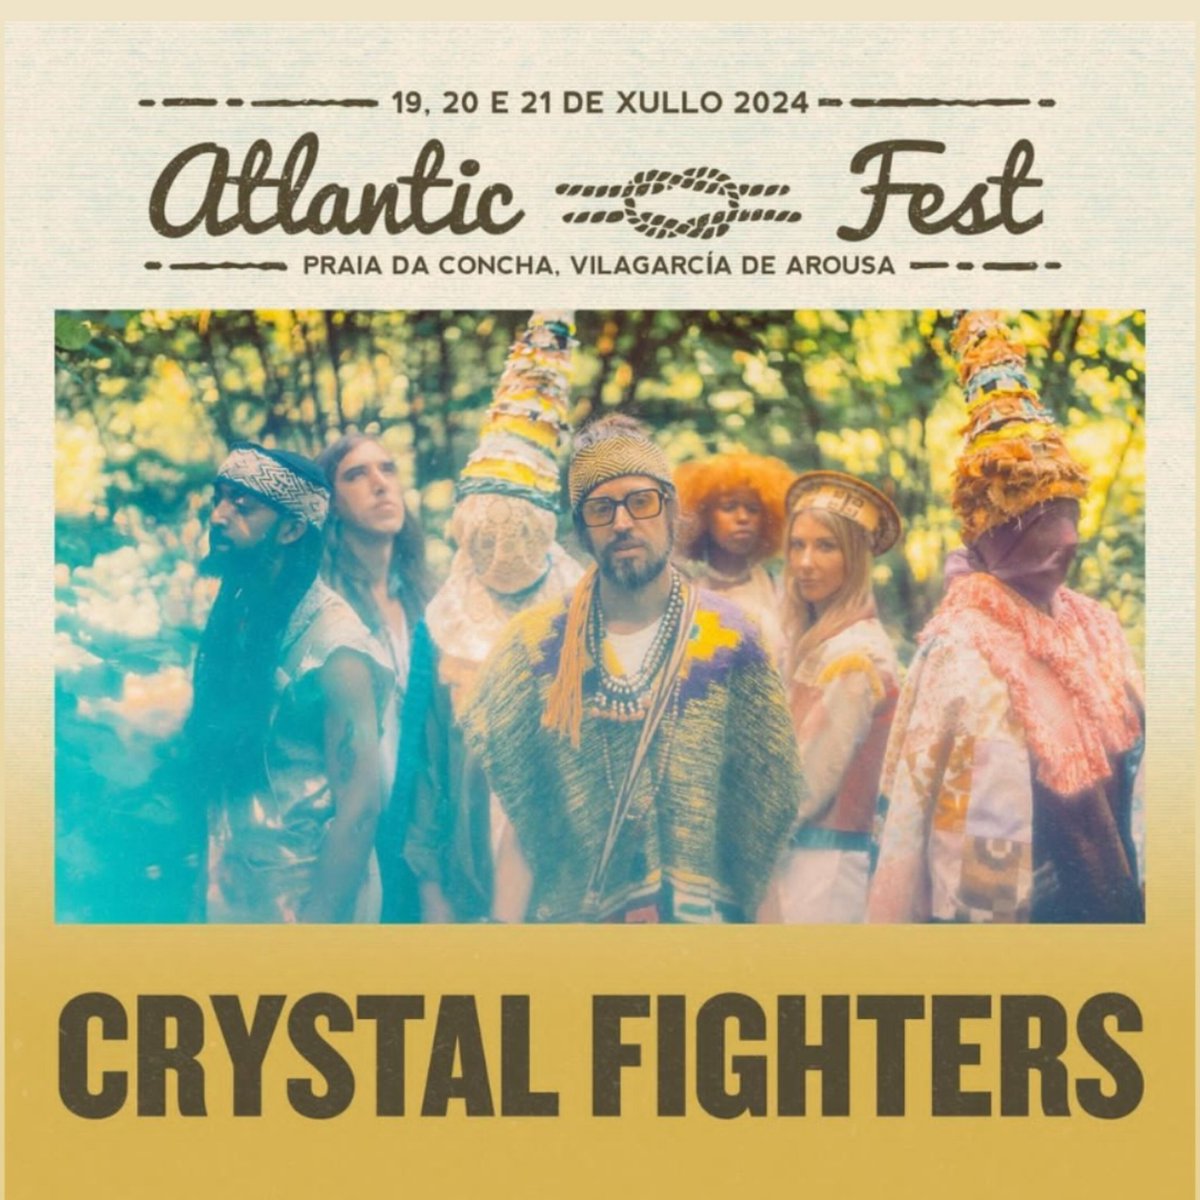 🎤🎶 de @crystalfighters 🤯 en el @Atlantic_Fest 📌 #Galicia 

atlanticfest.com